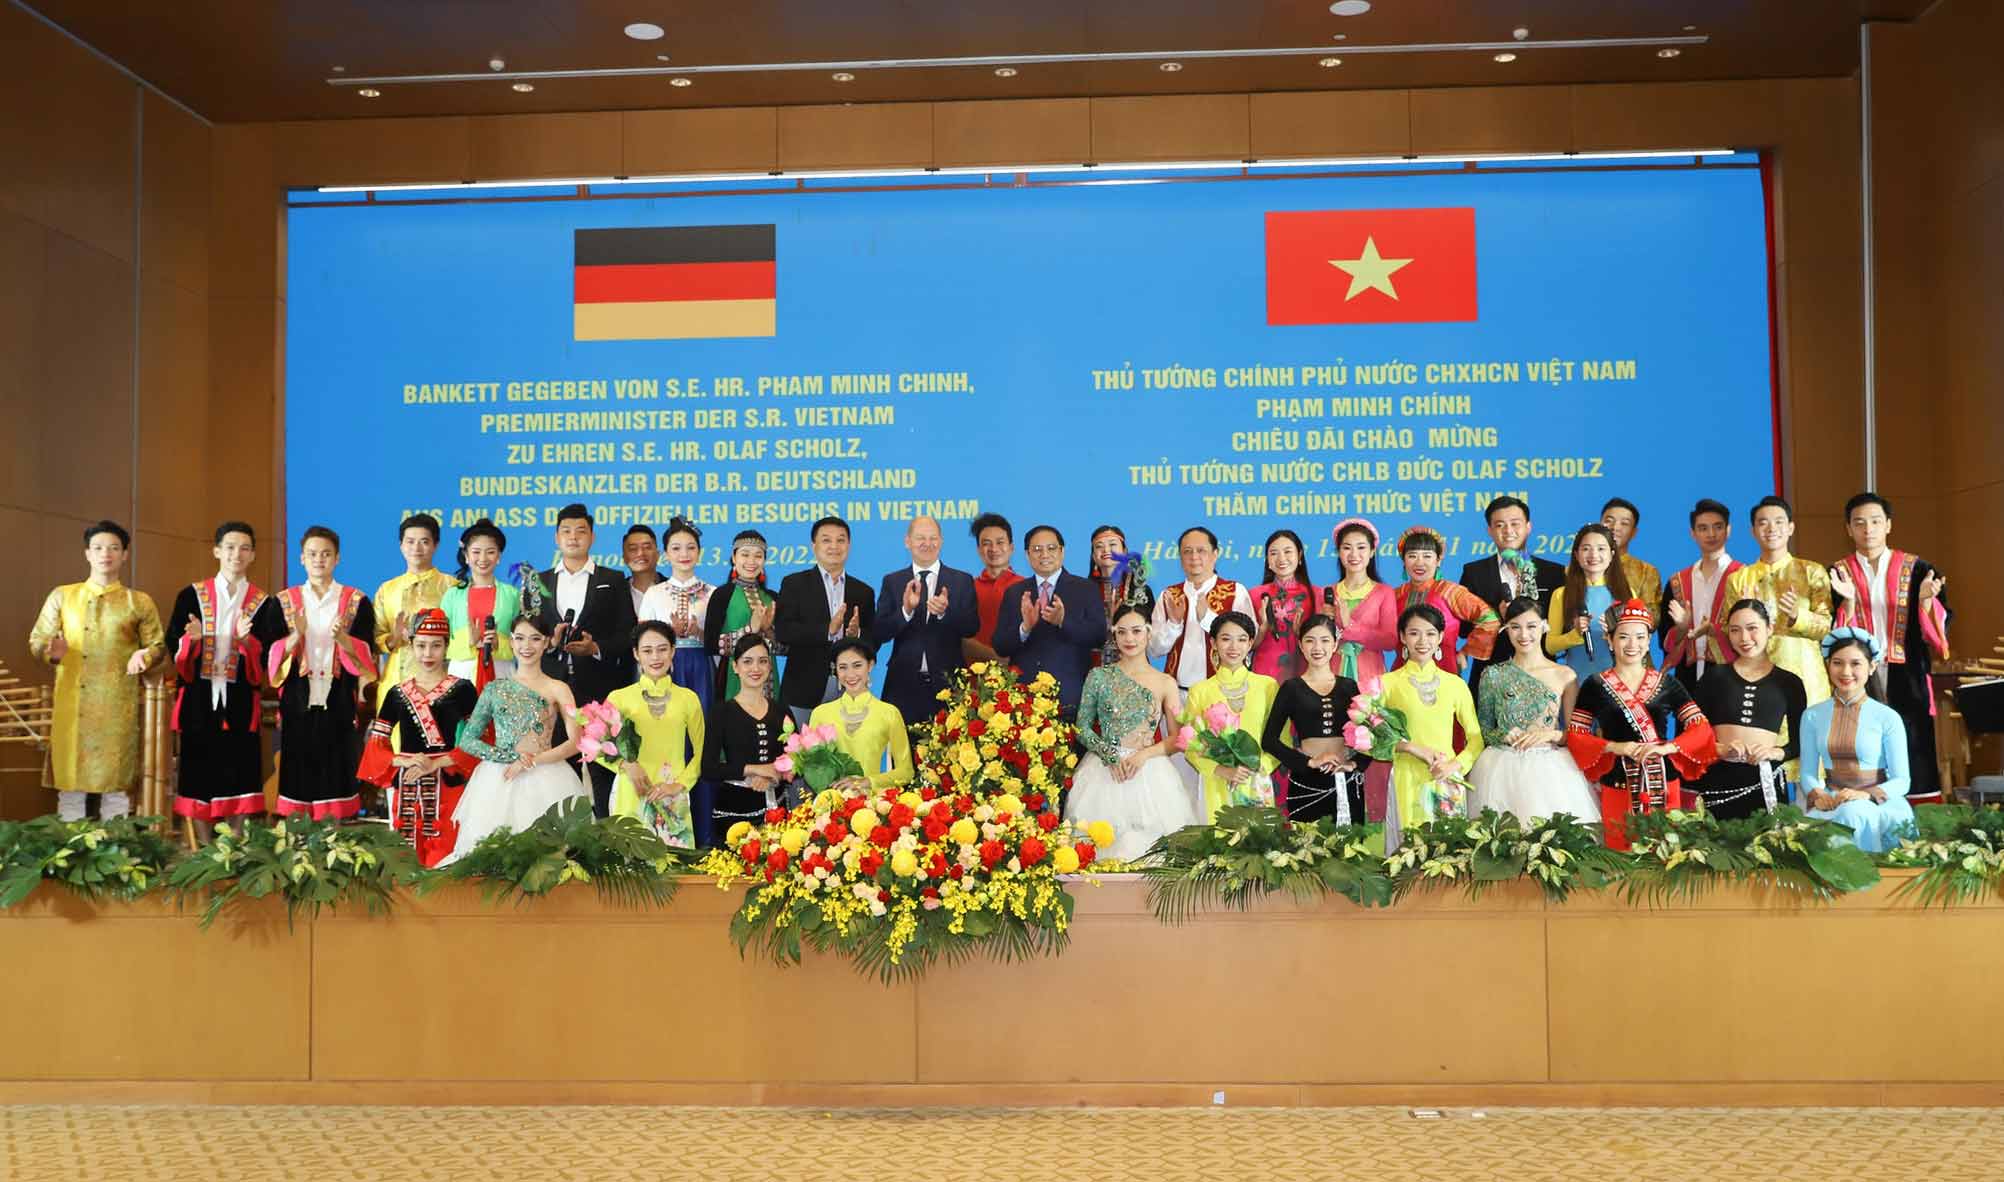 Chương trình nghệ thuật đặc biệt chào mừng Thủ tướng Cộng hòa liên bang Đức Olaf Scholz thăm Việt Nam